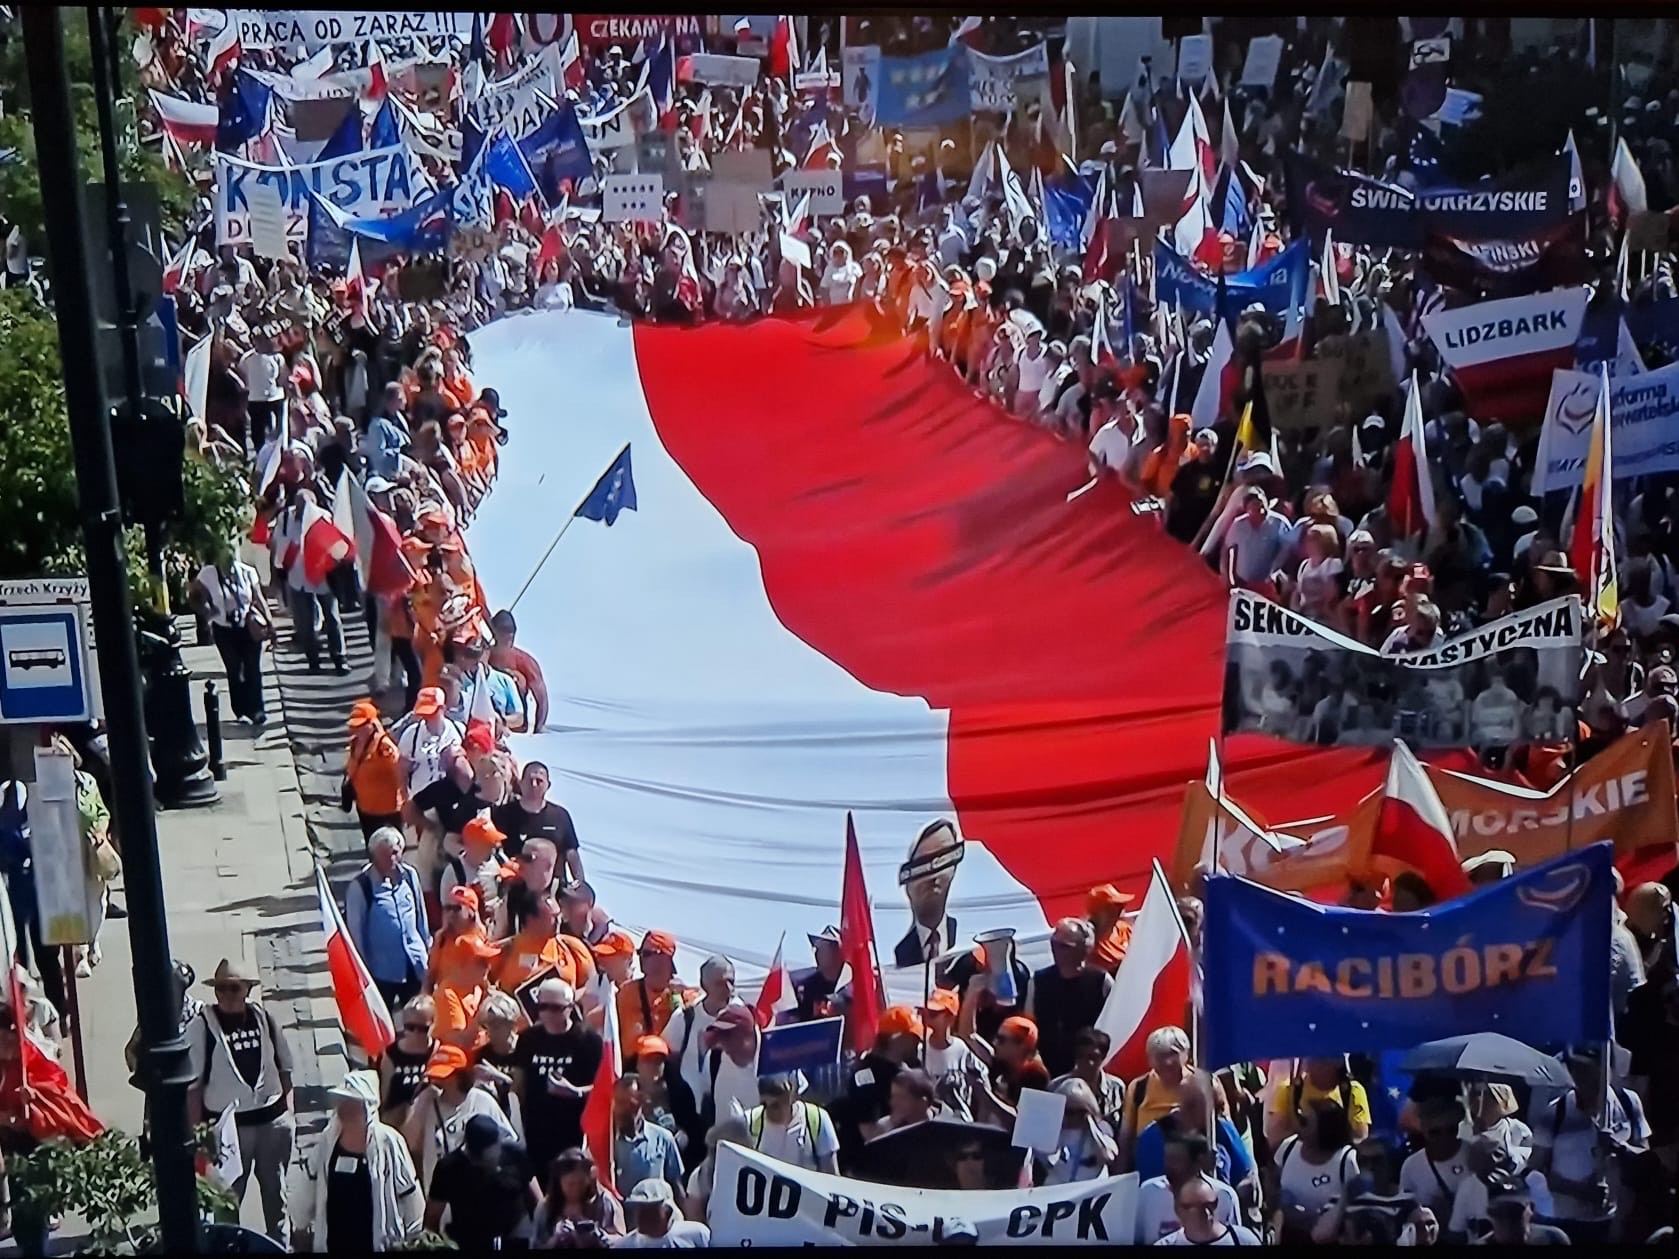 Screen z przekazu tv, gdzie raciborski transparent widać obok flagi narodowej